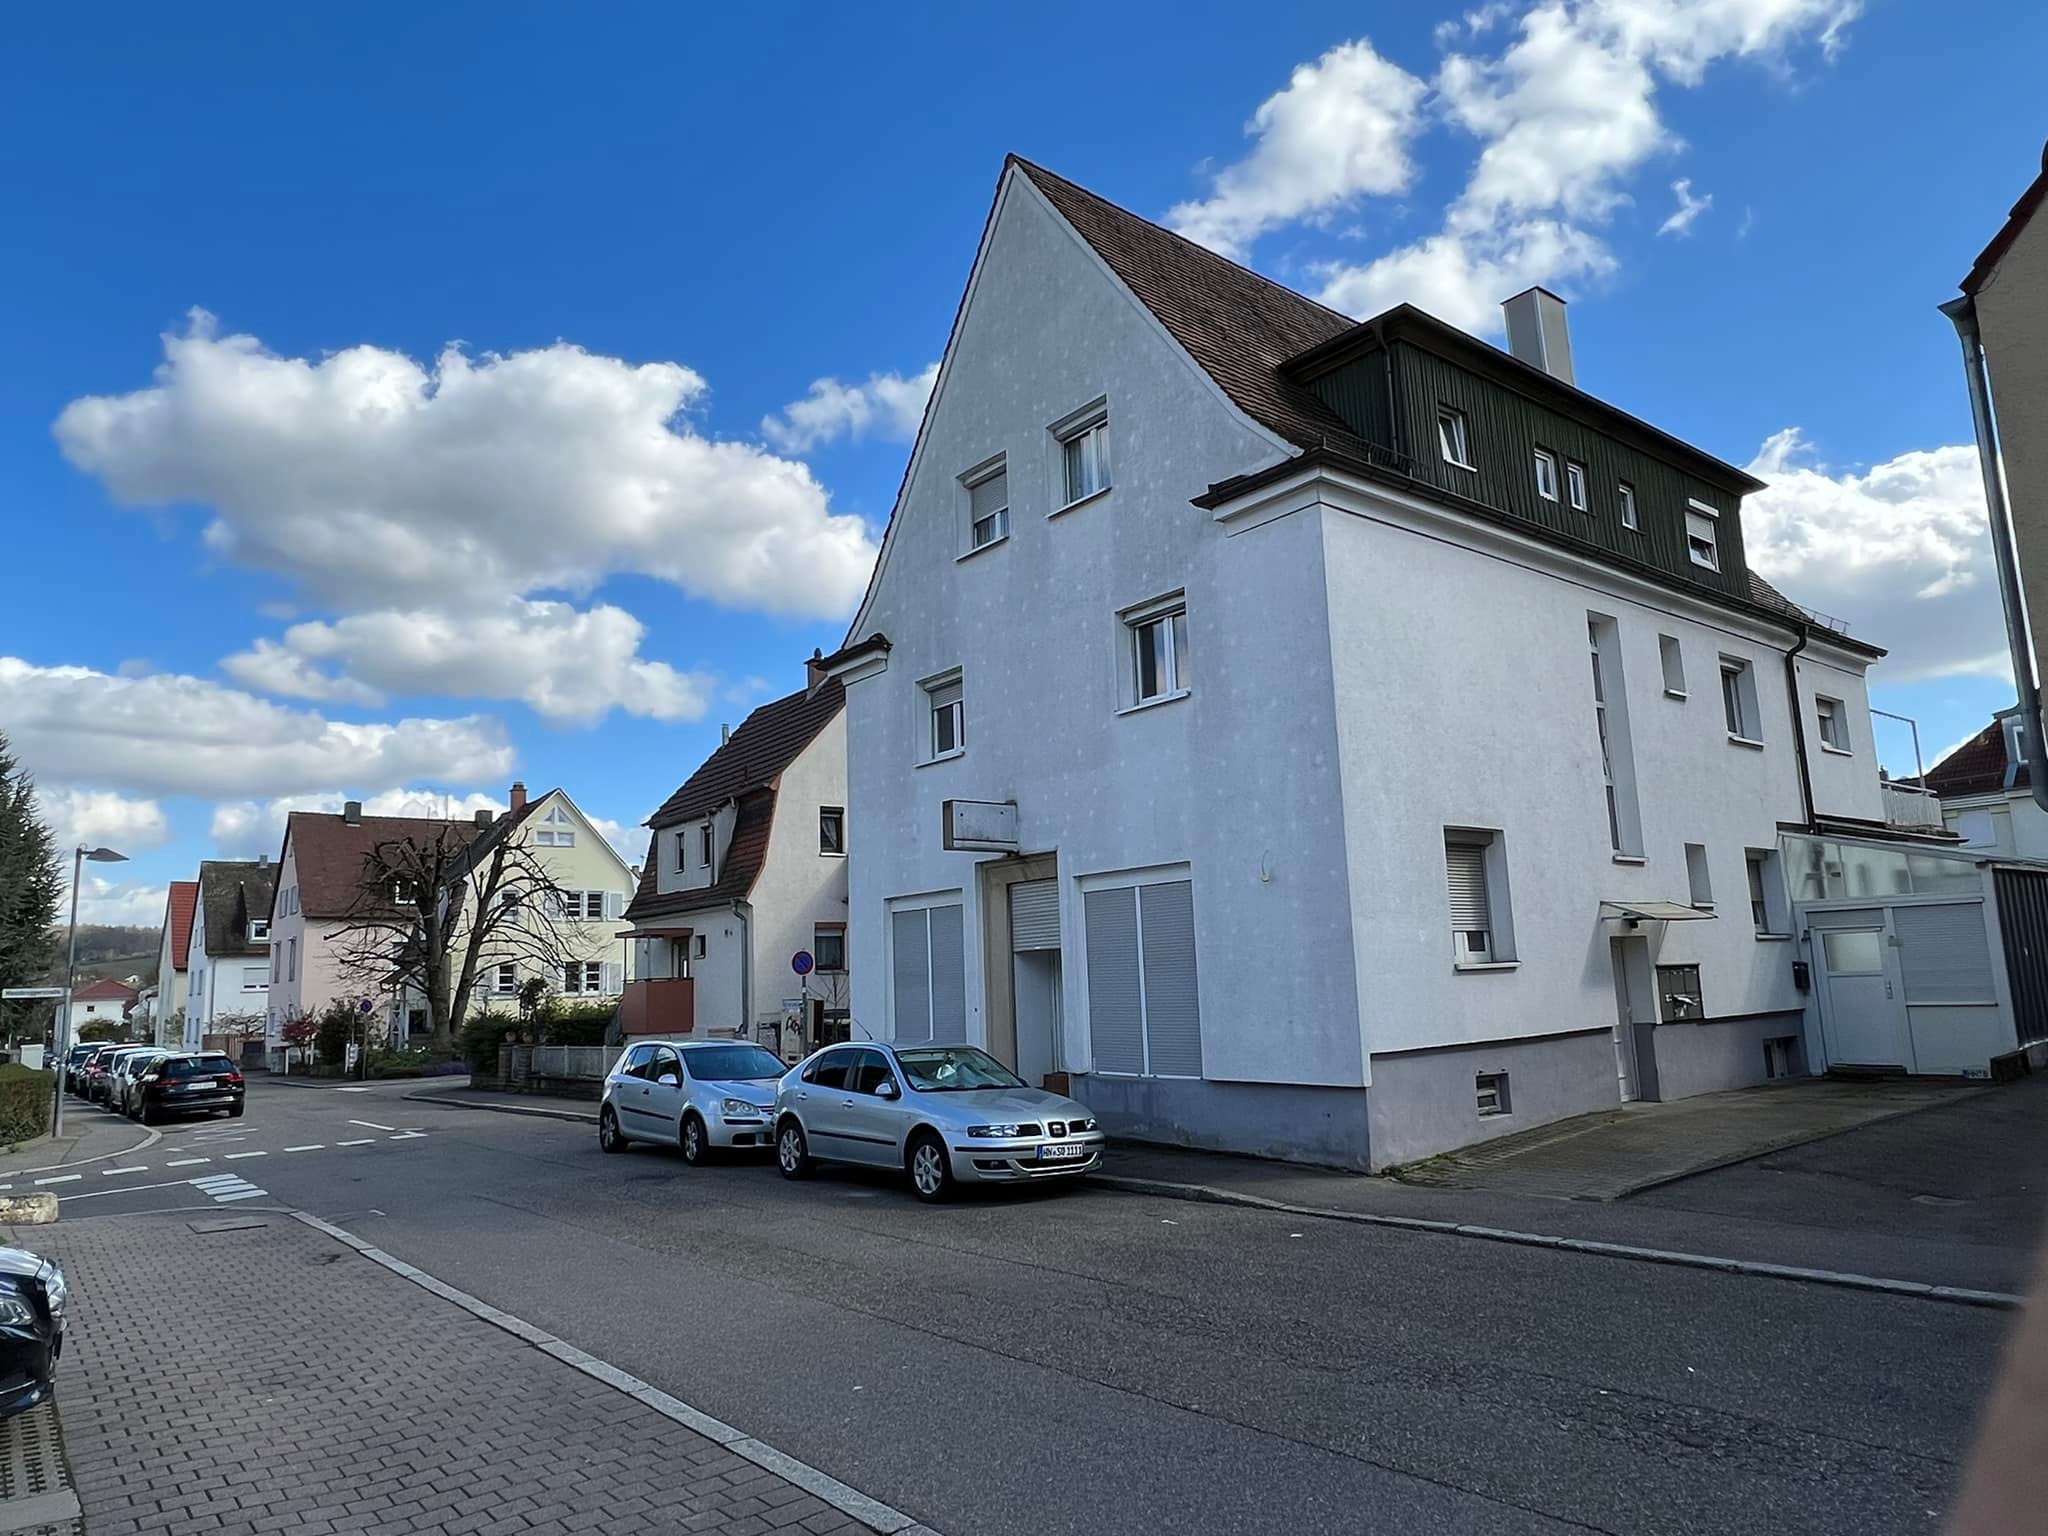 Heilbronn Mehrfamilienhaus zum Kauf 6 Wohnungen Wohneinheiten Immobilienmakler Haus kaufen verkaufen